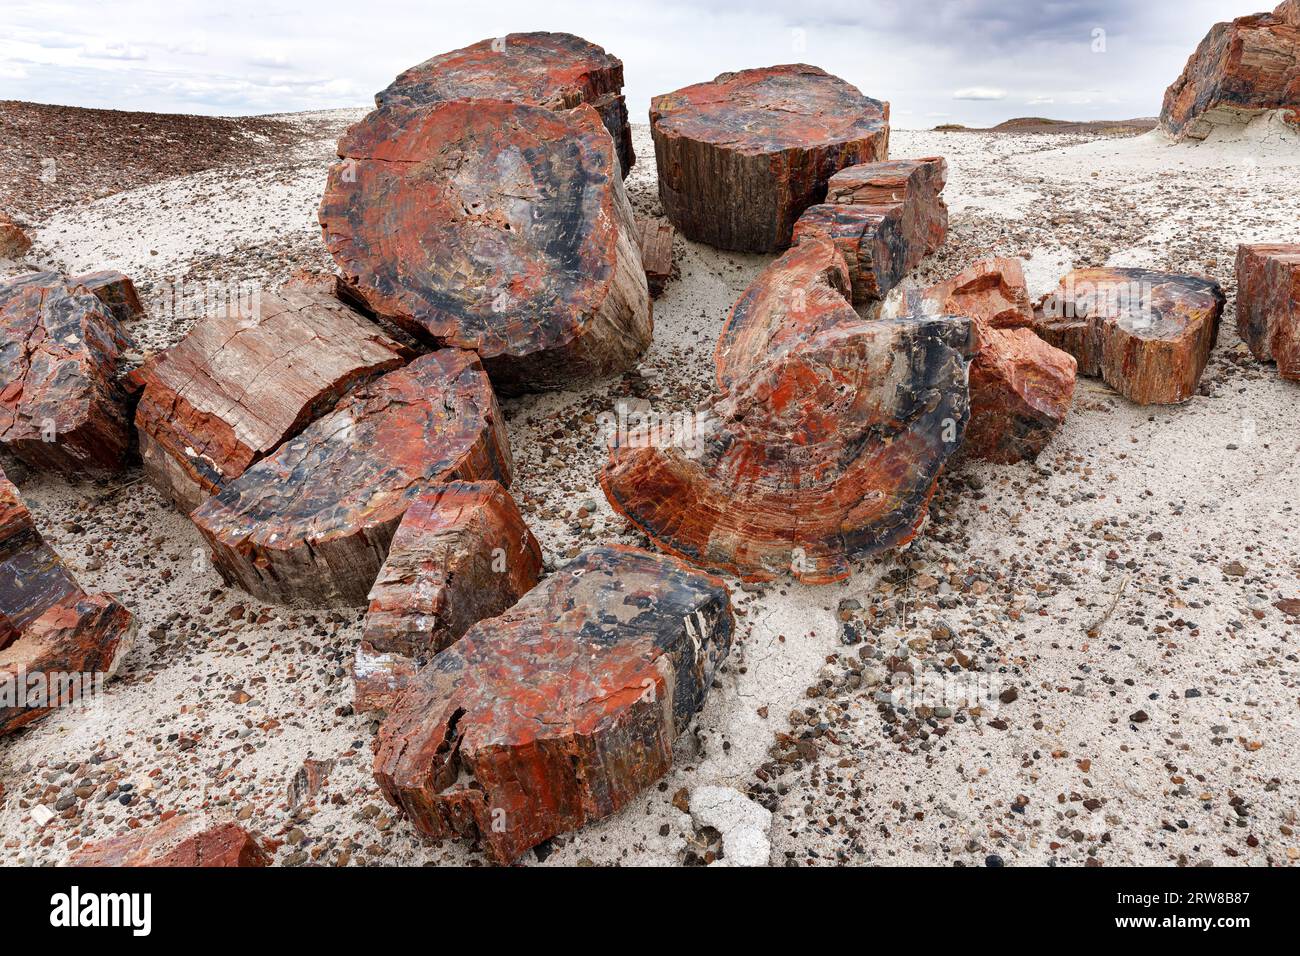 Arbres tombés pétrifiés de la fin du Trias, il y a environ 225 millions d'années. Parc national de la forêt pétrifiée, Arizona, États-Unis Banque D'Images